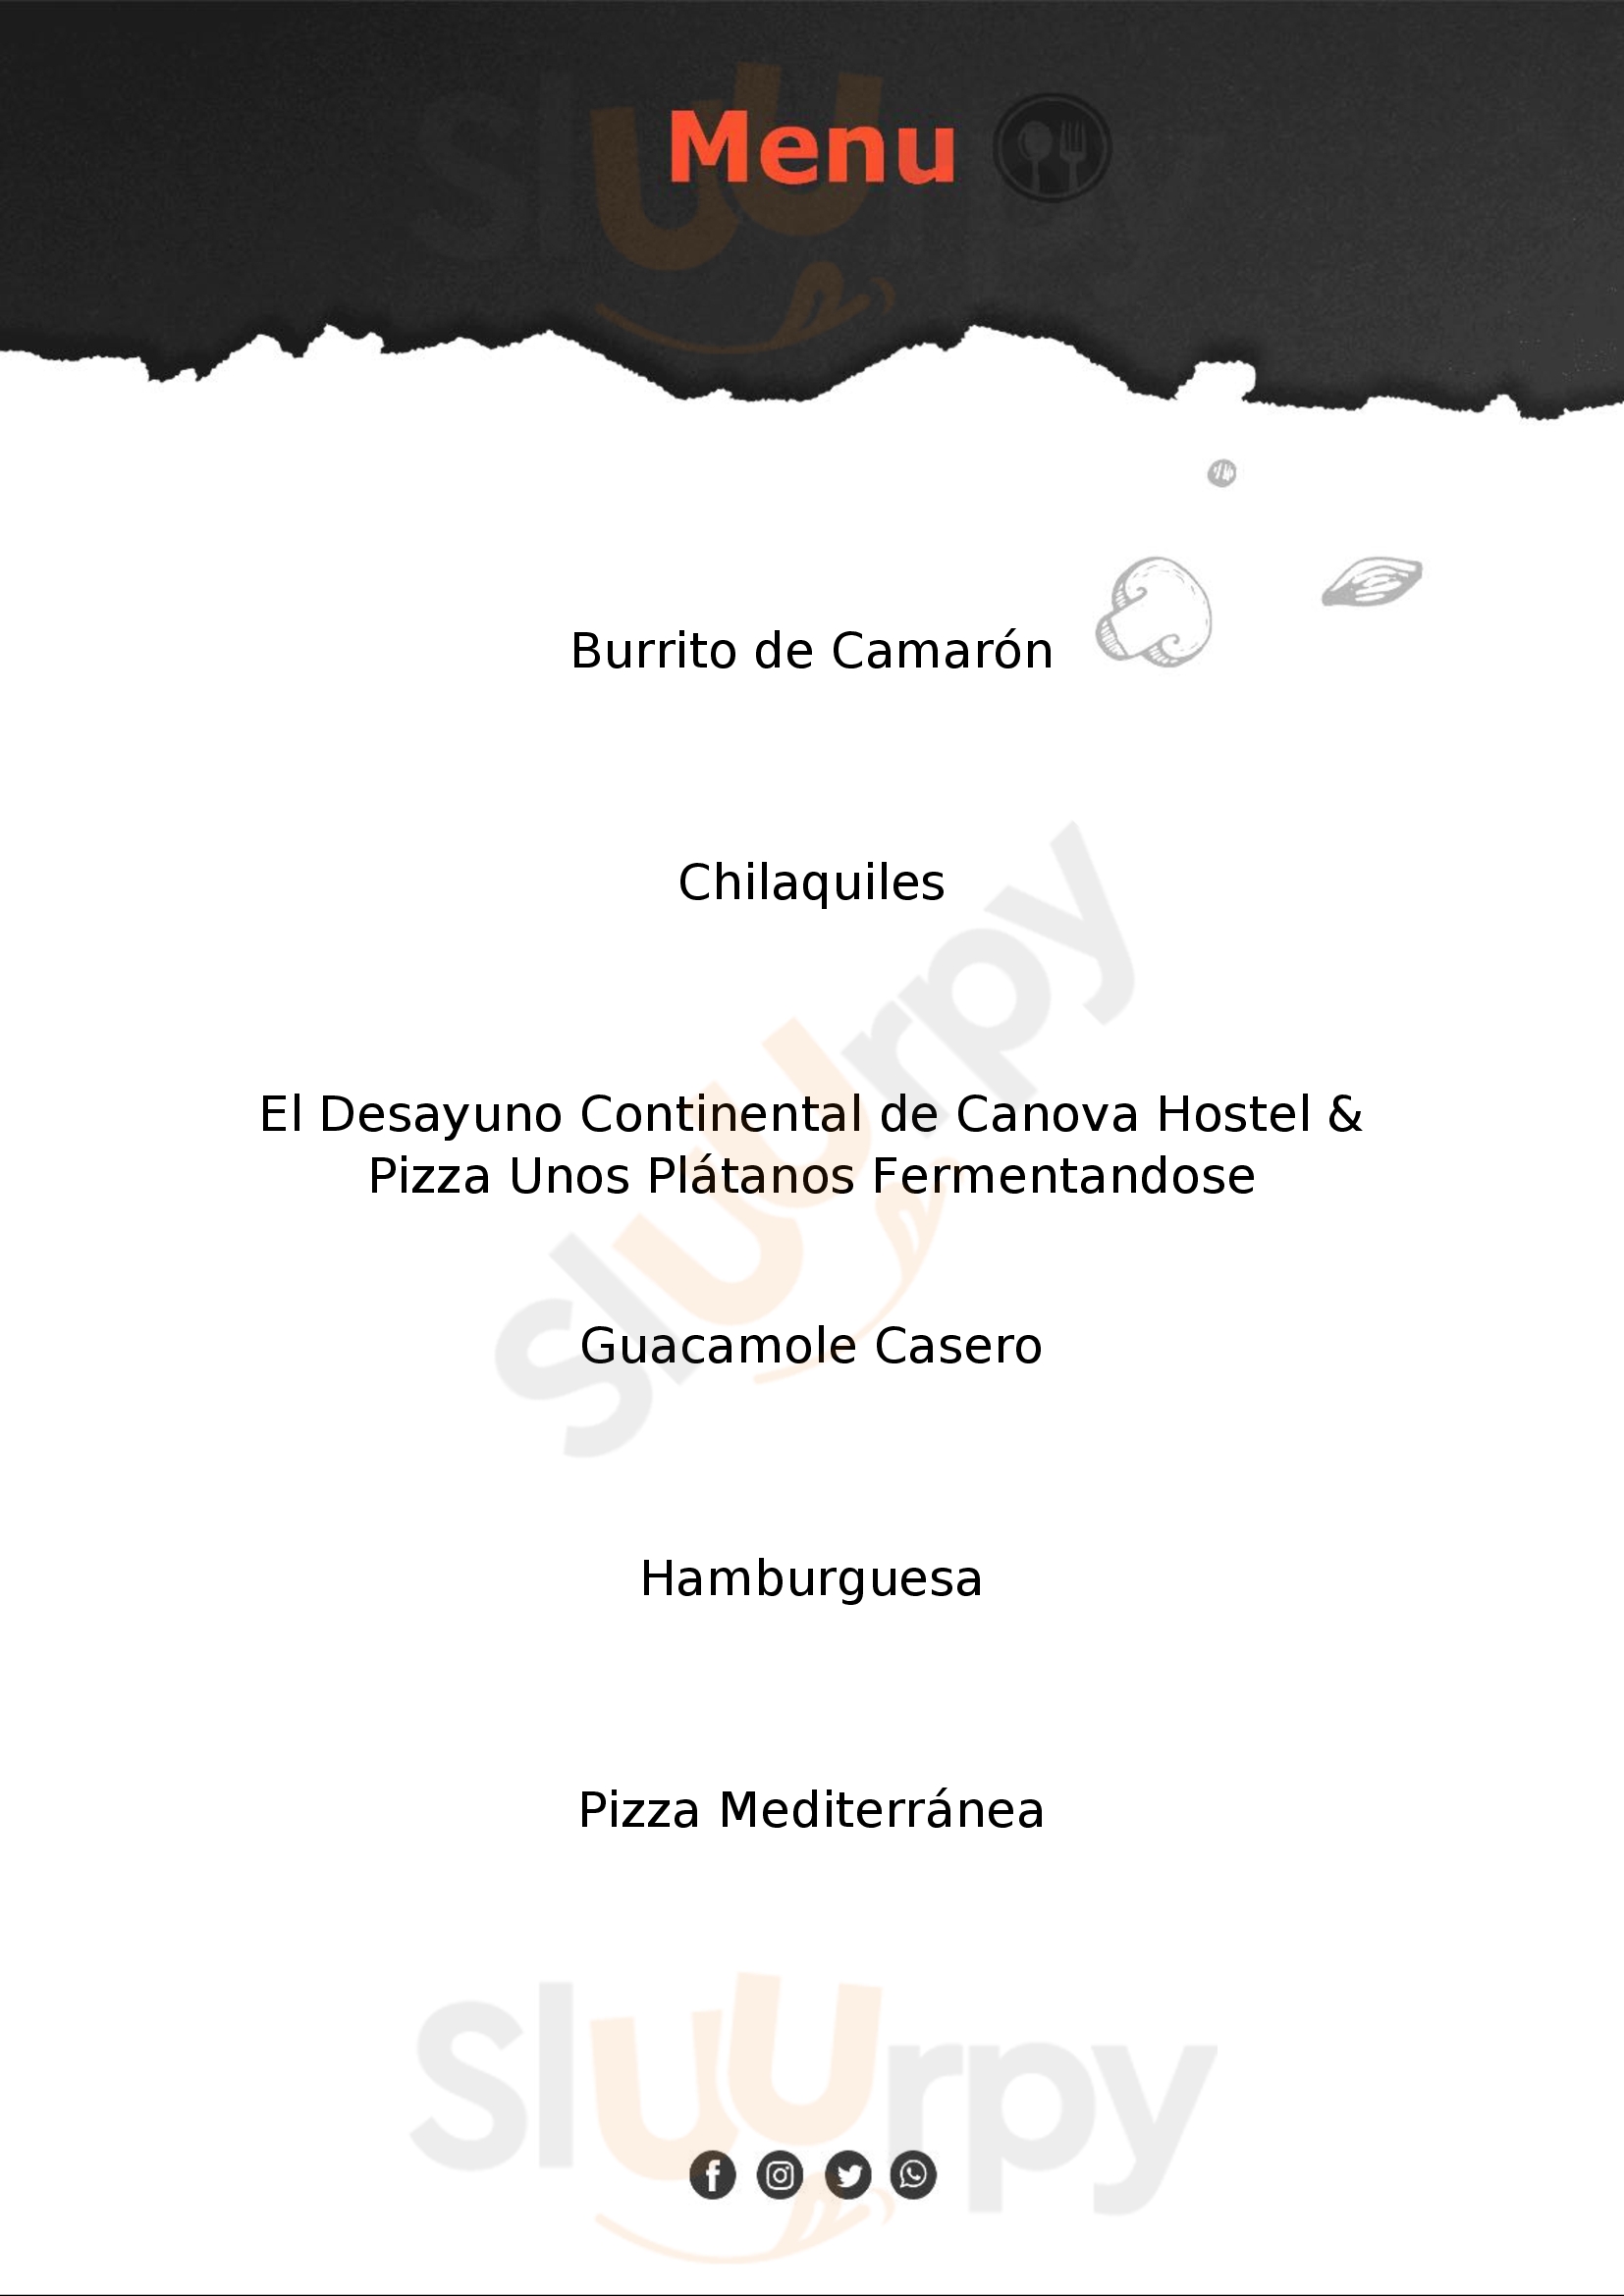 Canova:hostel & Pizza Puerto Vallarta Menu - 1